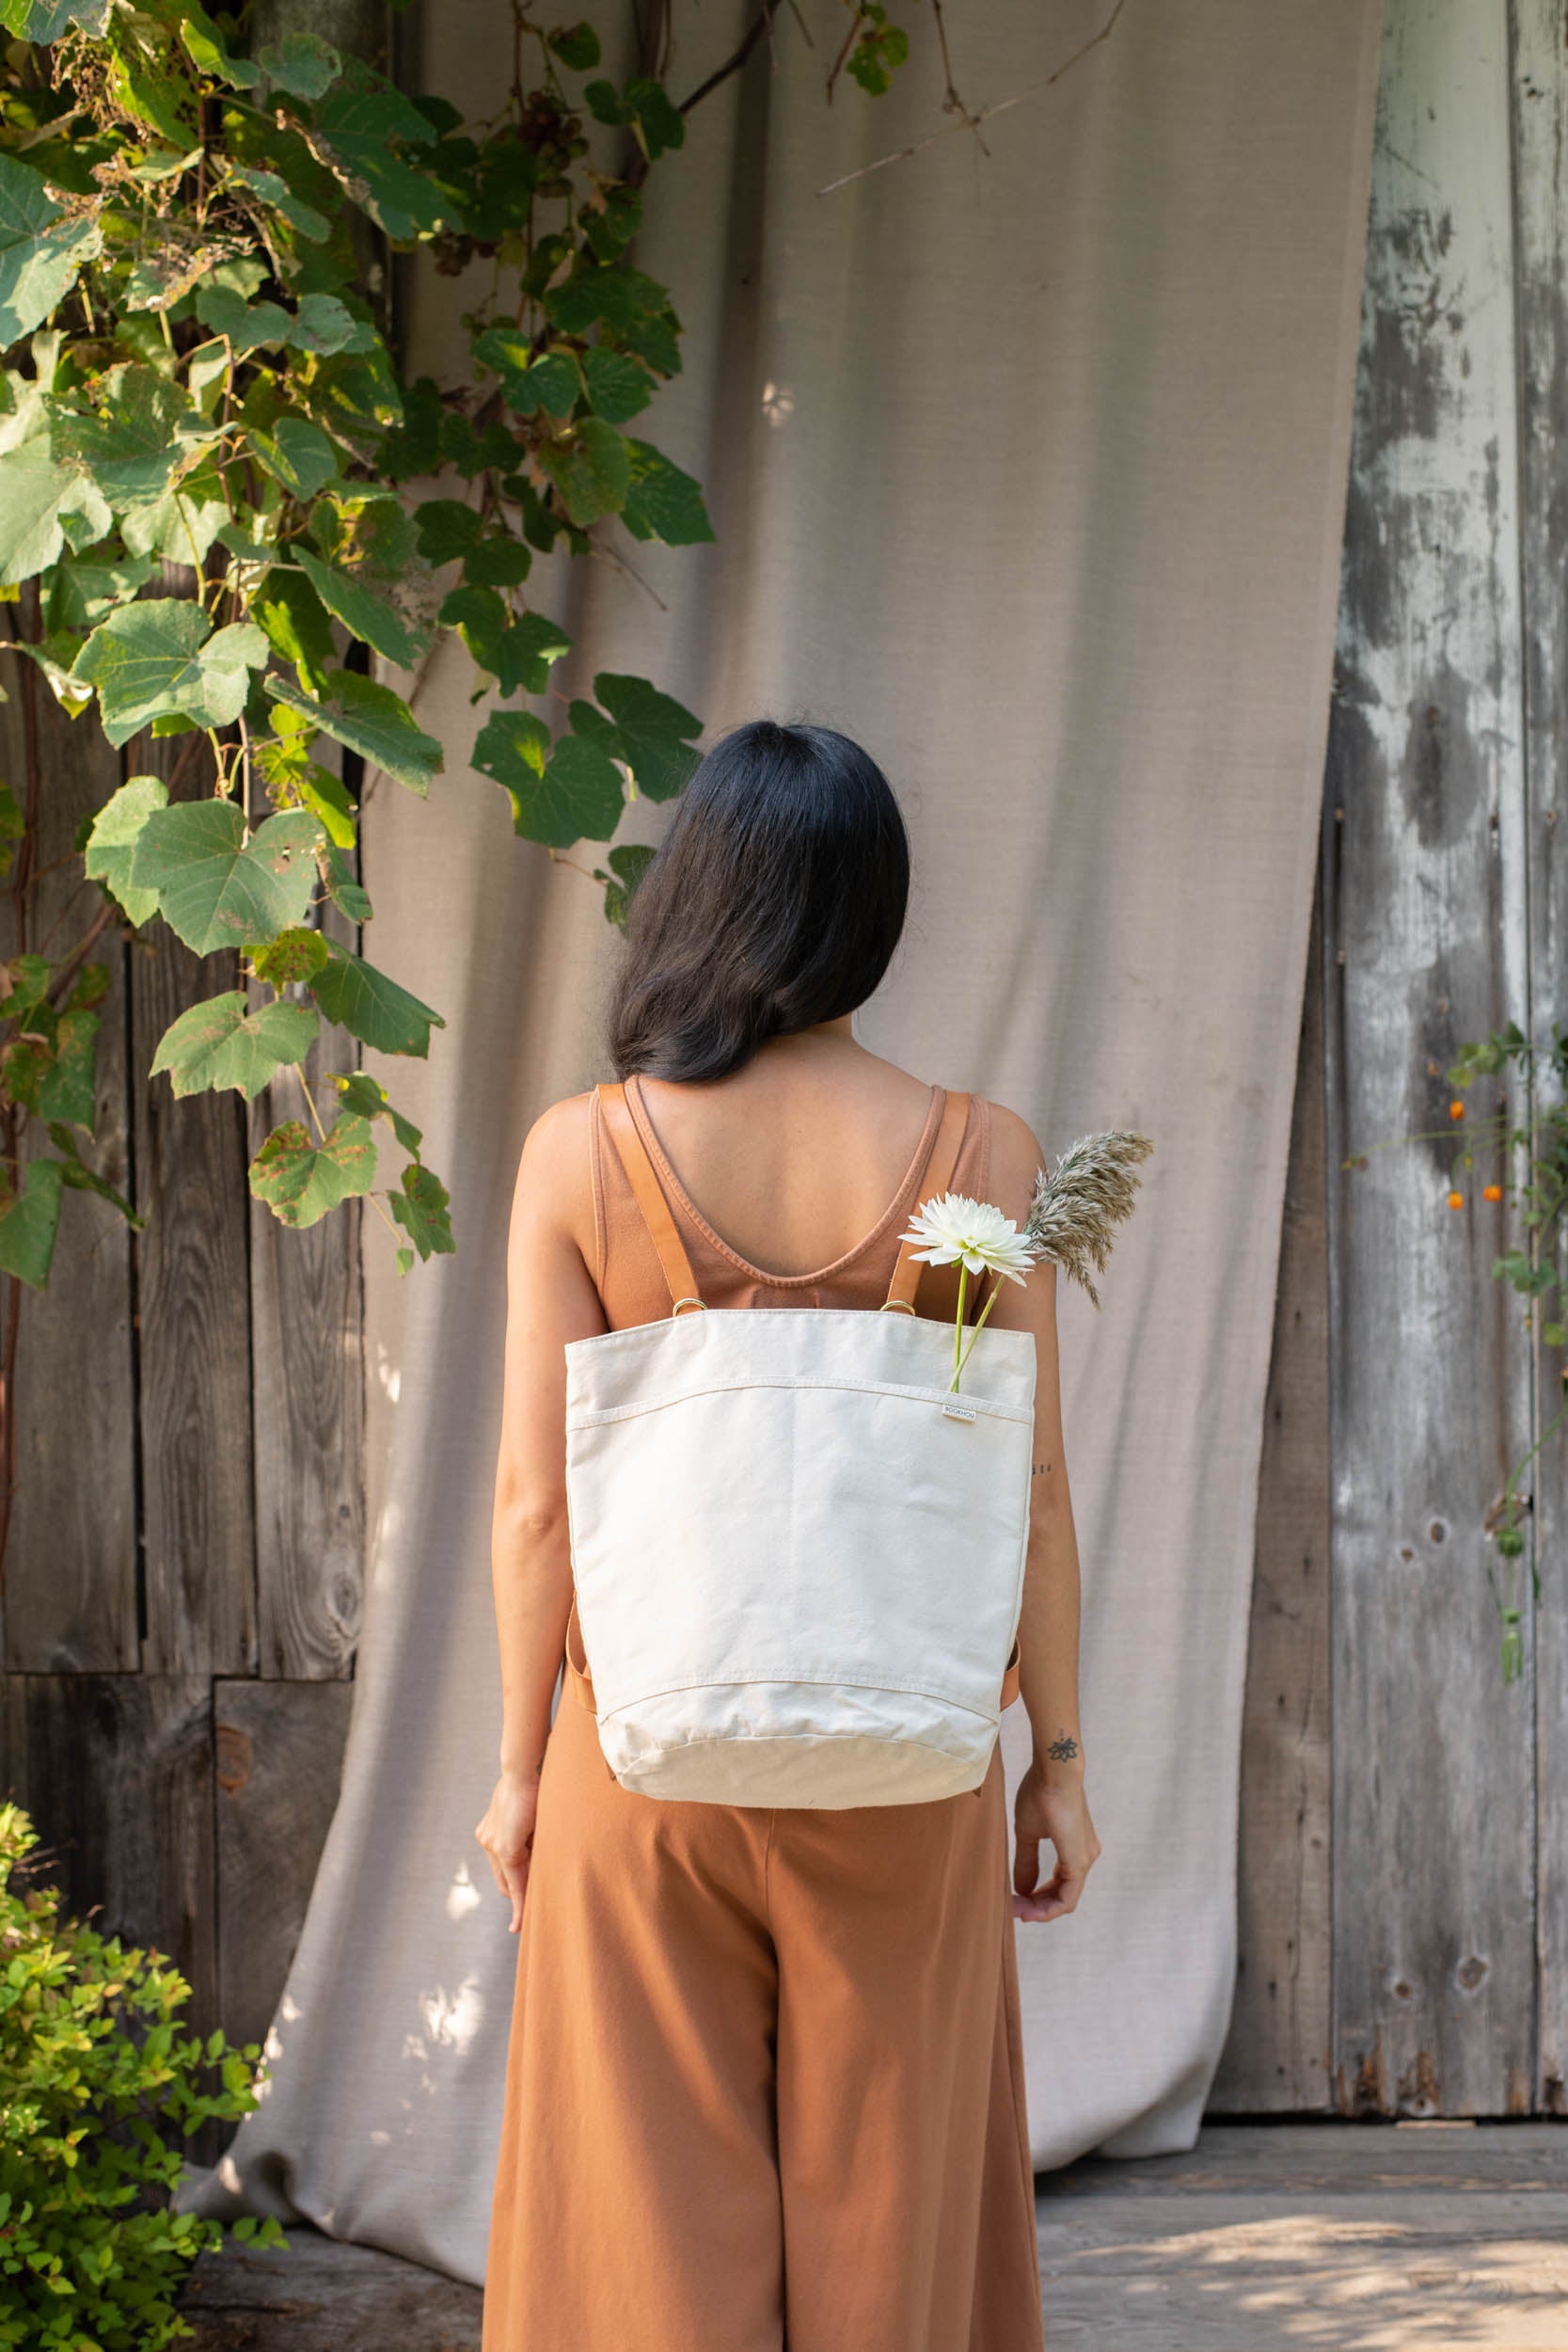 Sewn backpack by Arounna Khounorraj